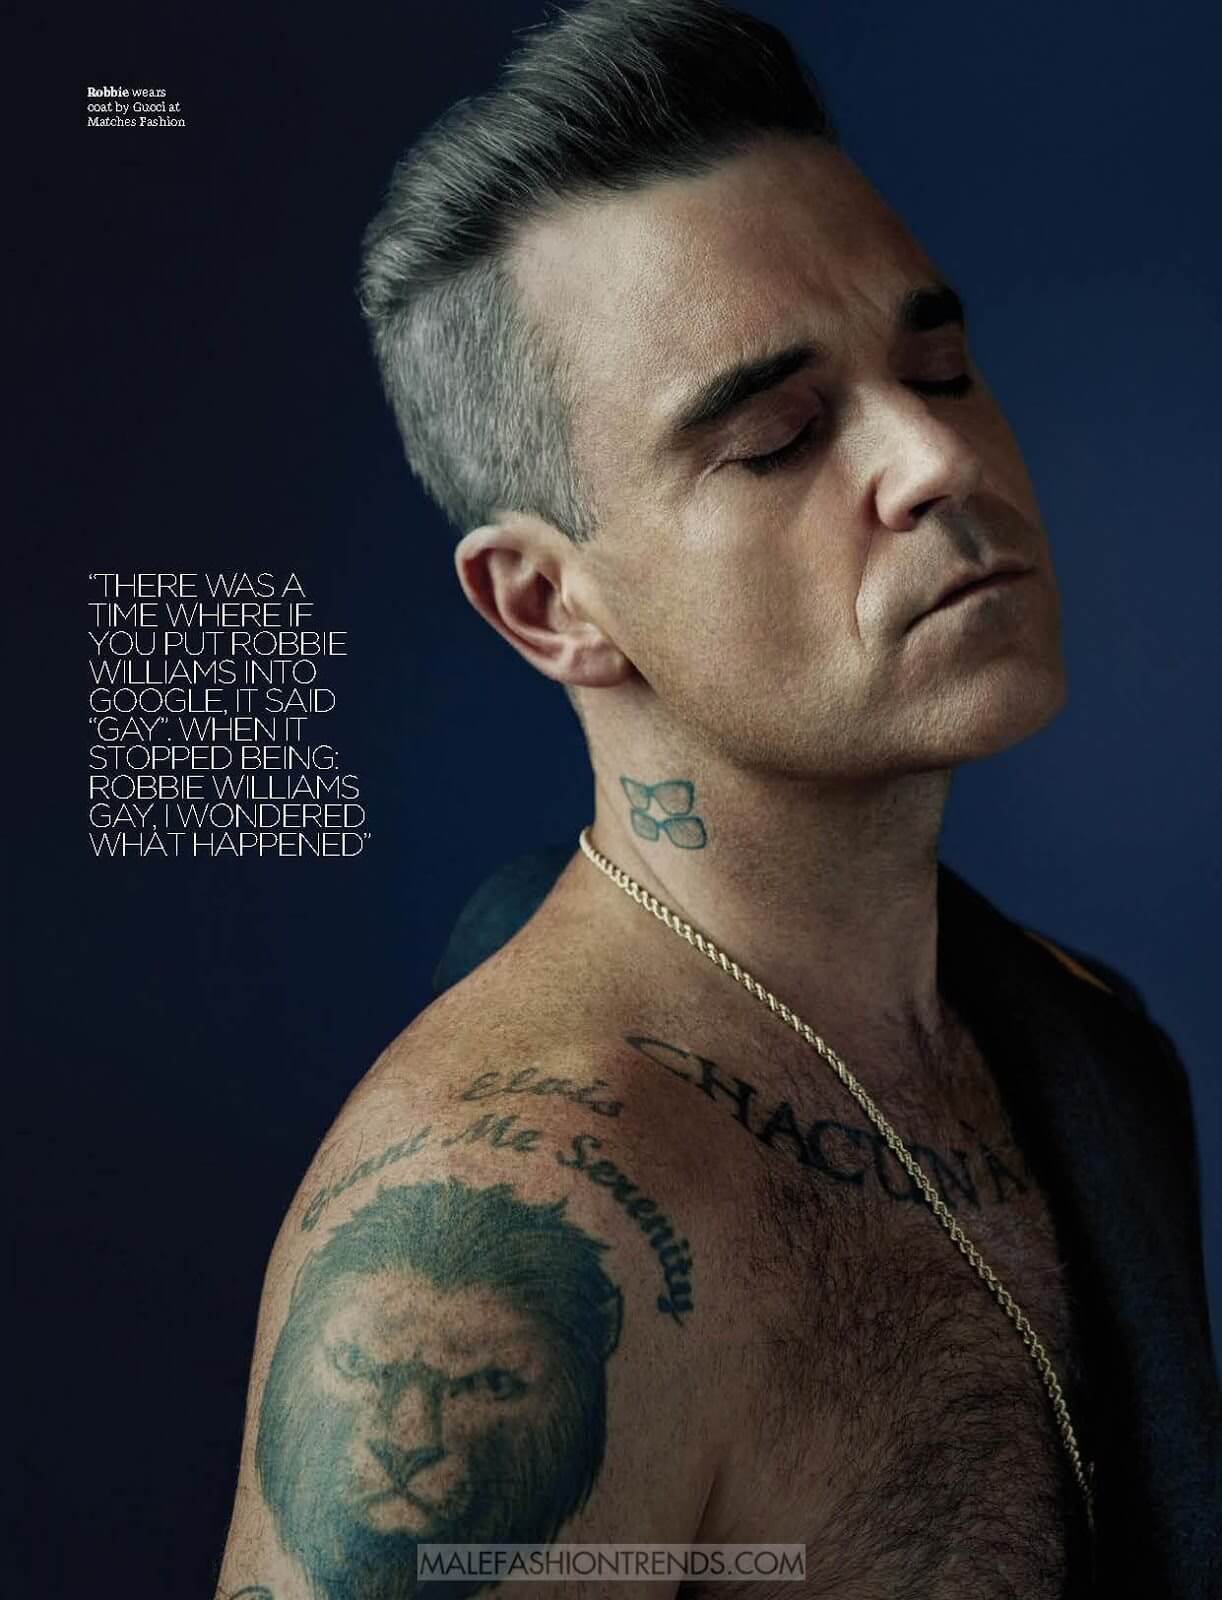 Buon compleanno Robbie Williams: la gallery che lo festeggia